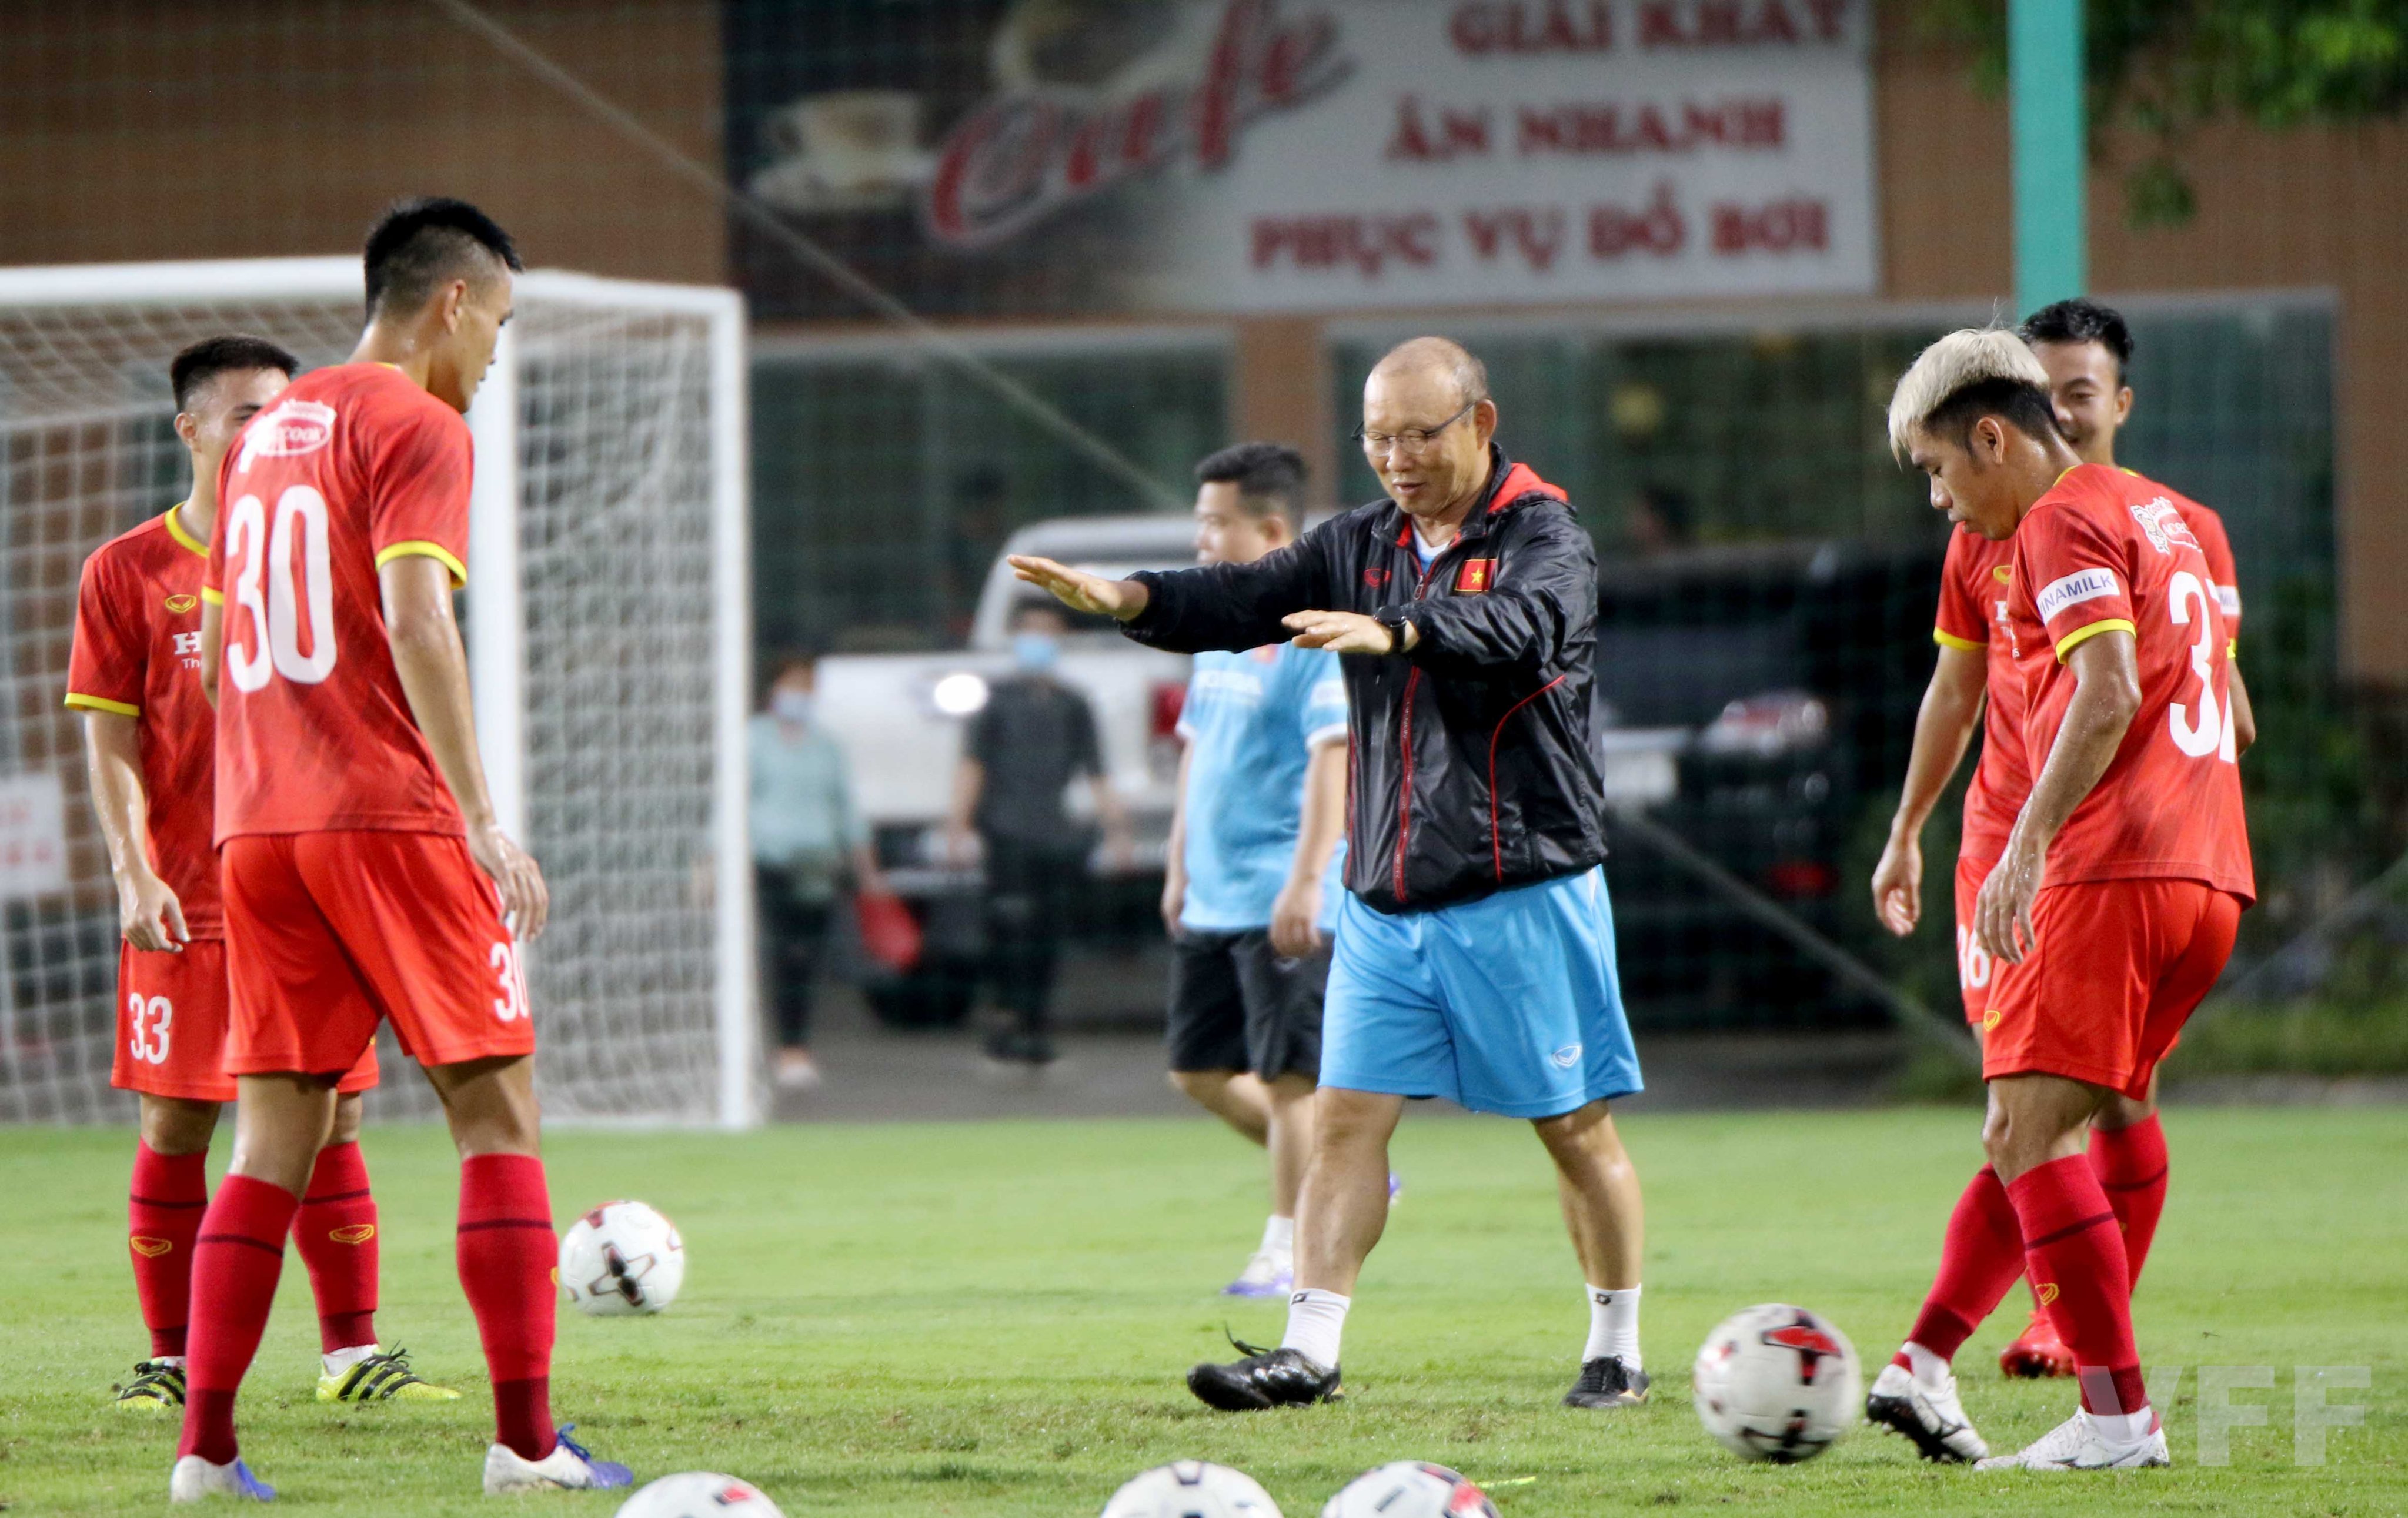 HLV Park Hang-seo đang chỉ đạo chiến thuật cho các cầu thủ tại buổi tập thứ 5 tại sân Trung tâm đào tạo bóng đá trẻ Việt Nam chiều 13-5. Ảnh: VFF